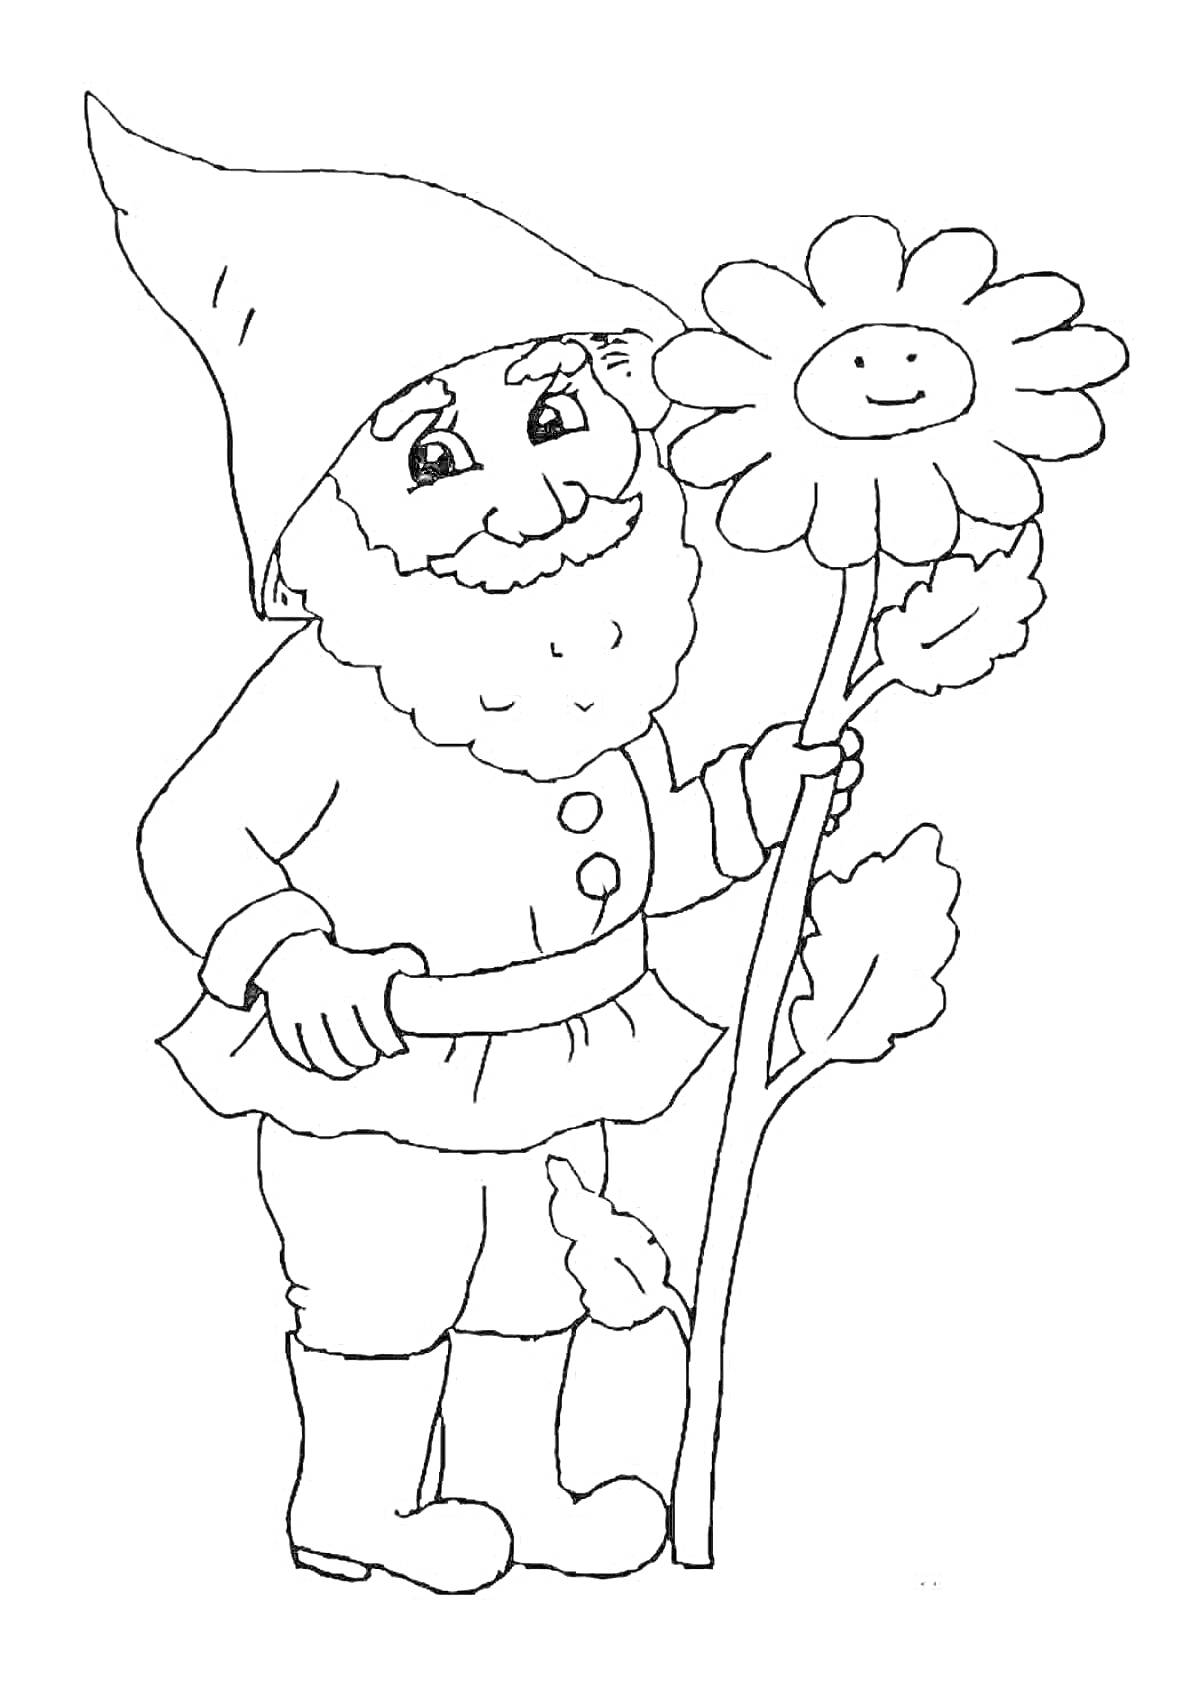 Раскраска Лесовичок с цветком (гном с бородой в шляпе держит цветок с улыбающимся лицом)